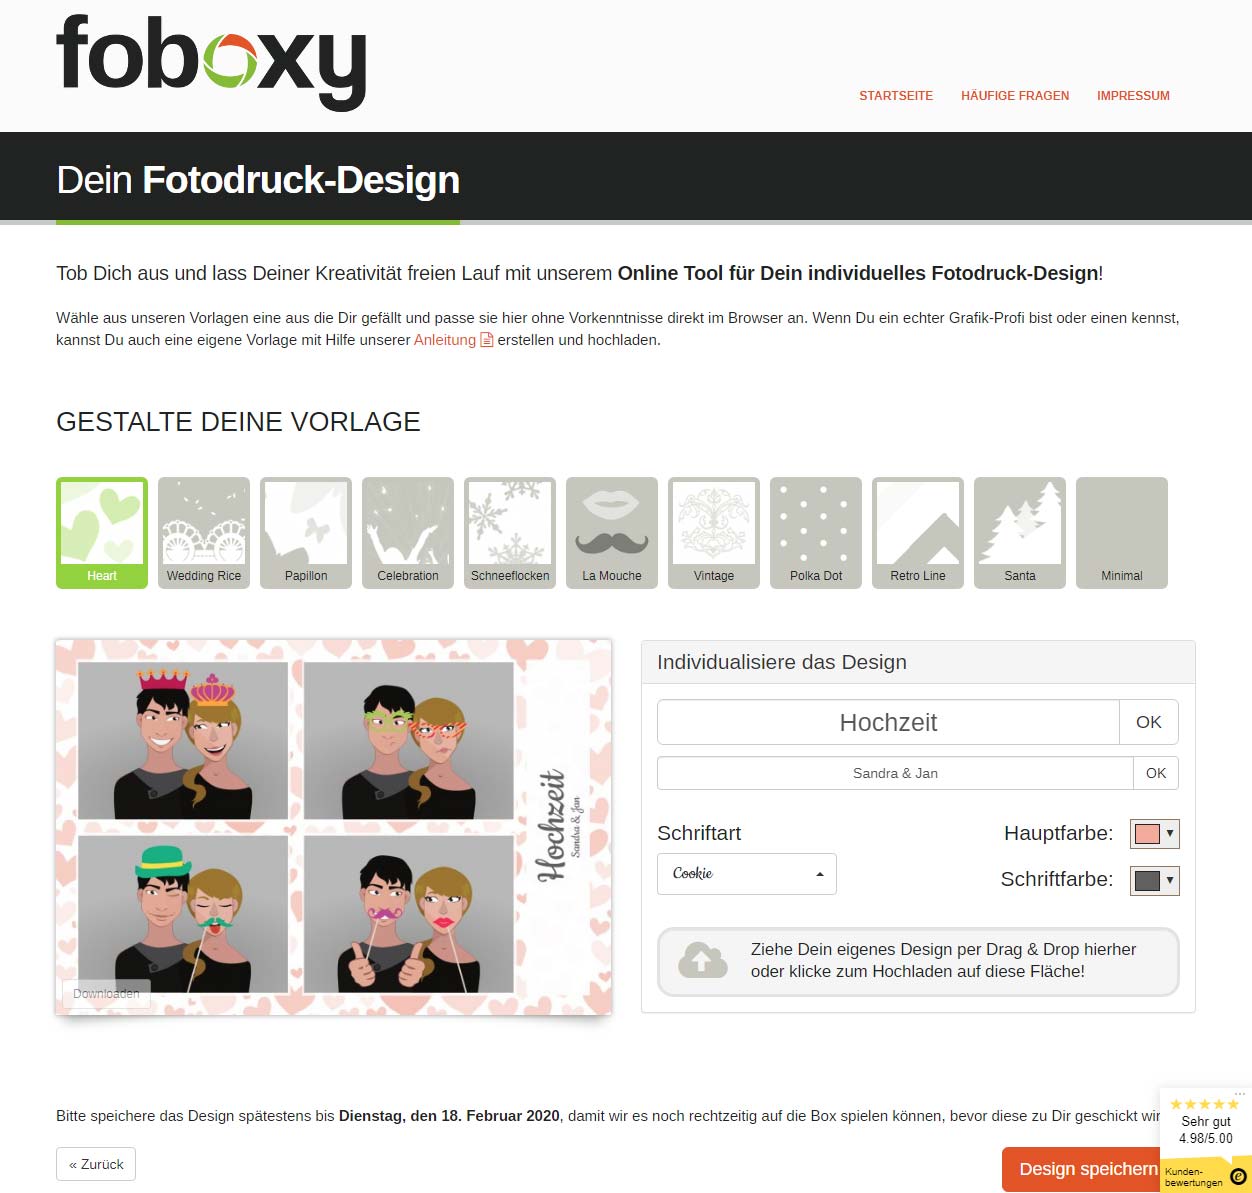 foboxy Erfahrungsbericht: Fotodruck Design gestalten